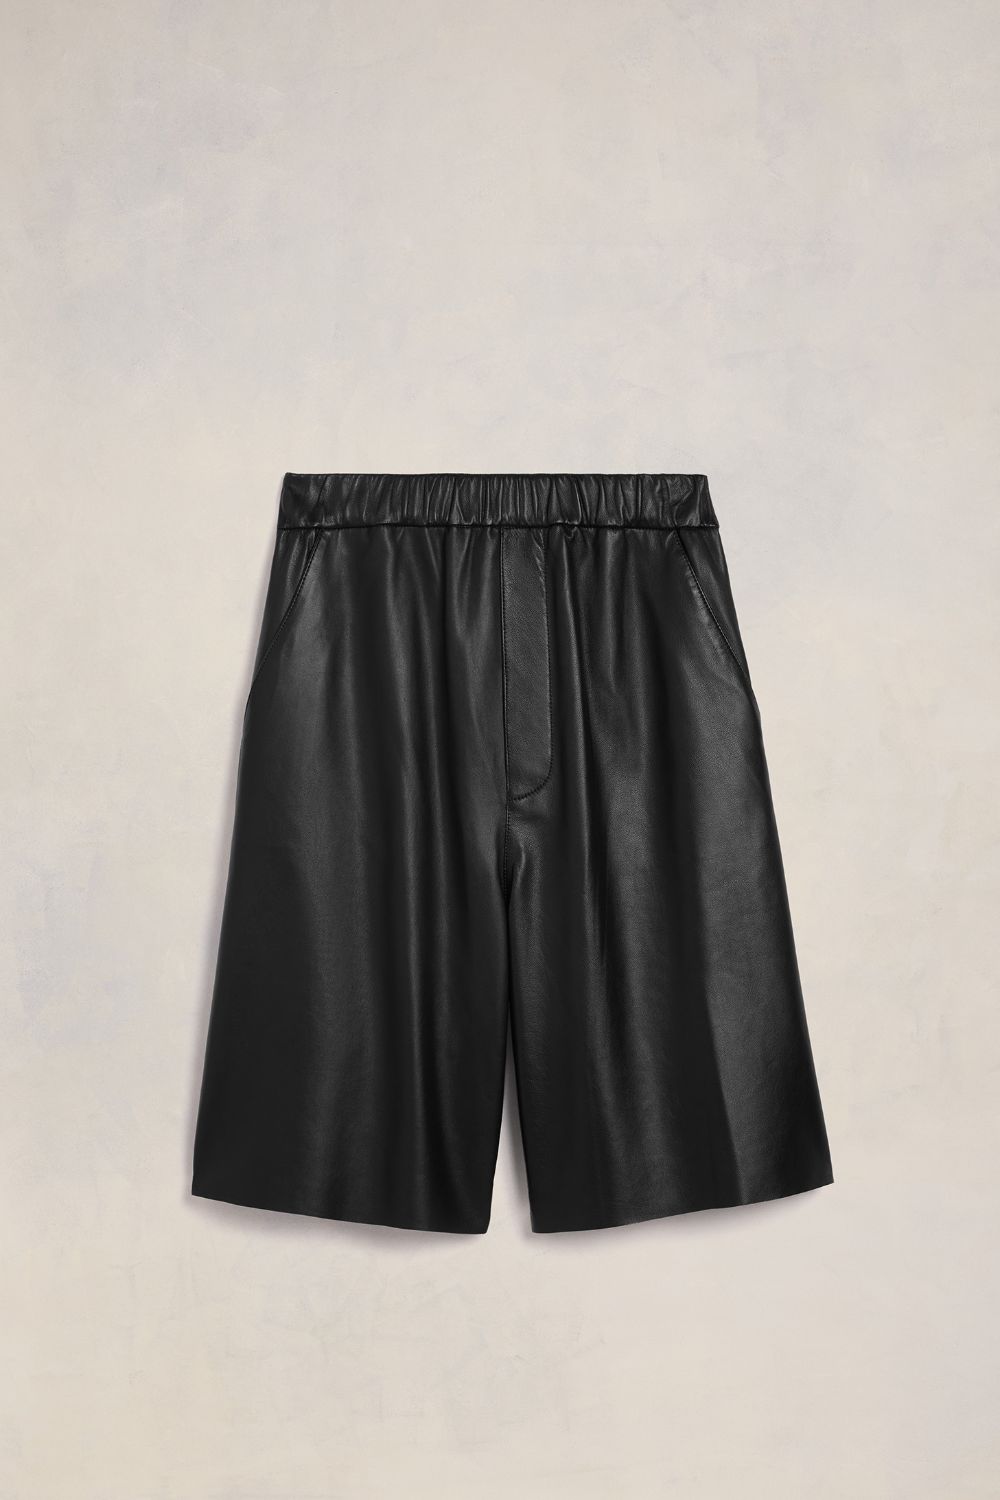 Shop Ami Alexandre Mattiussi Elasticated Waist Bermuda Shorts Black Unisex